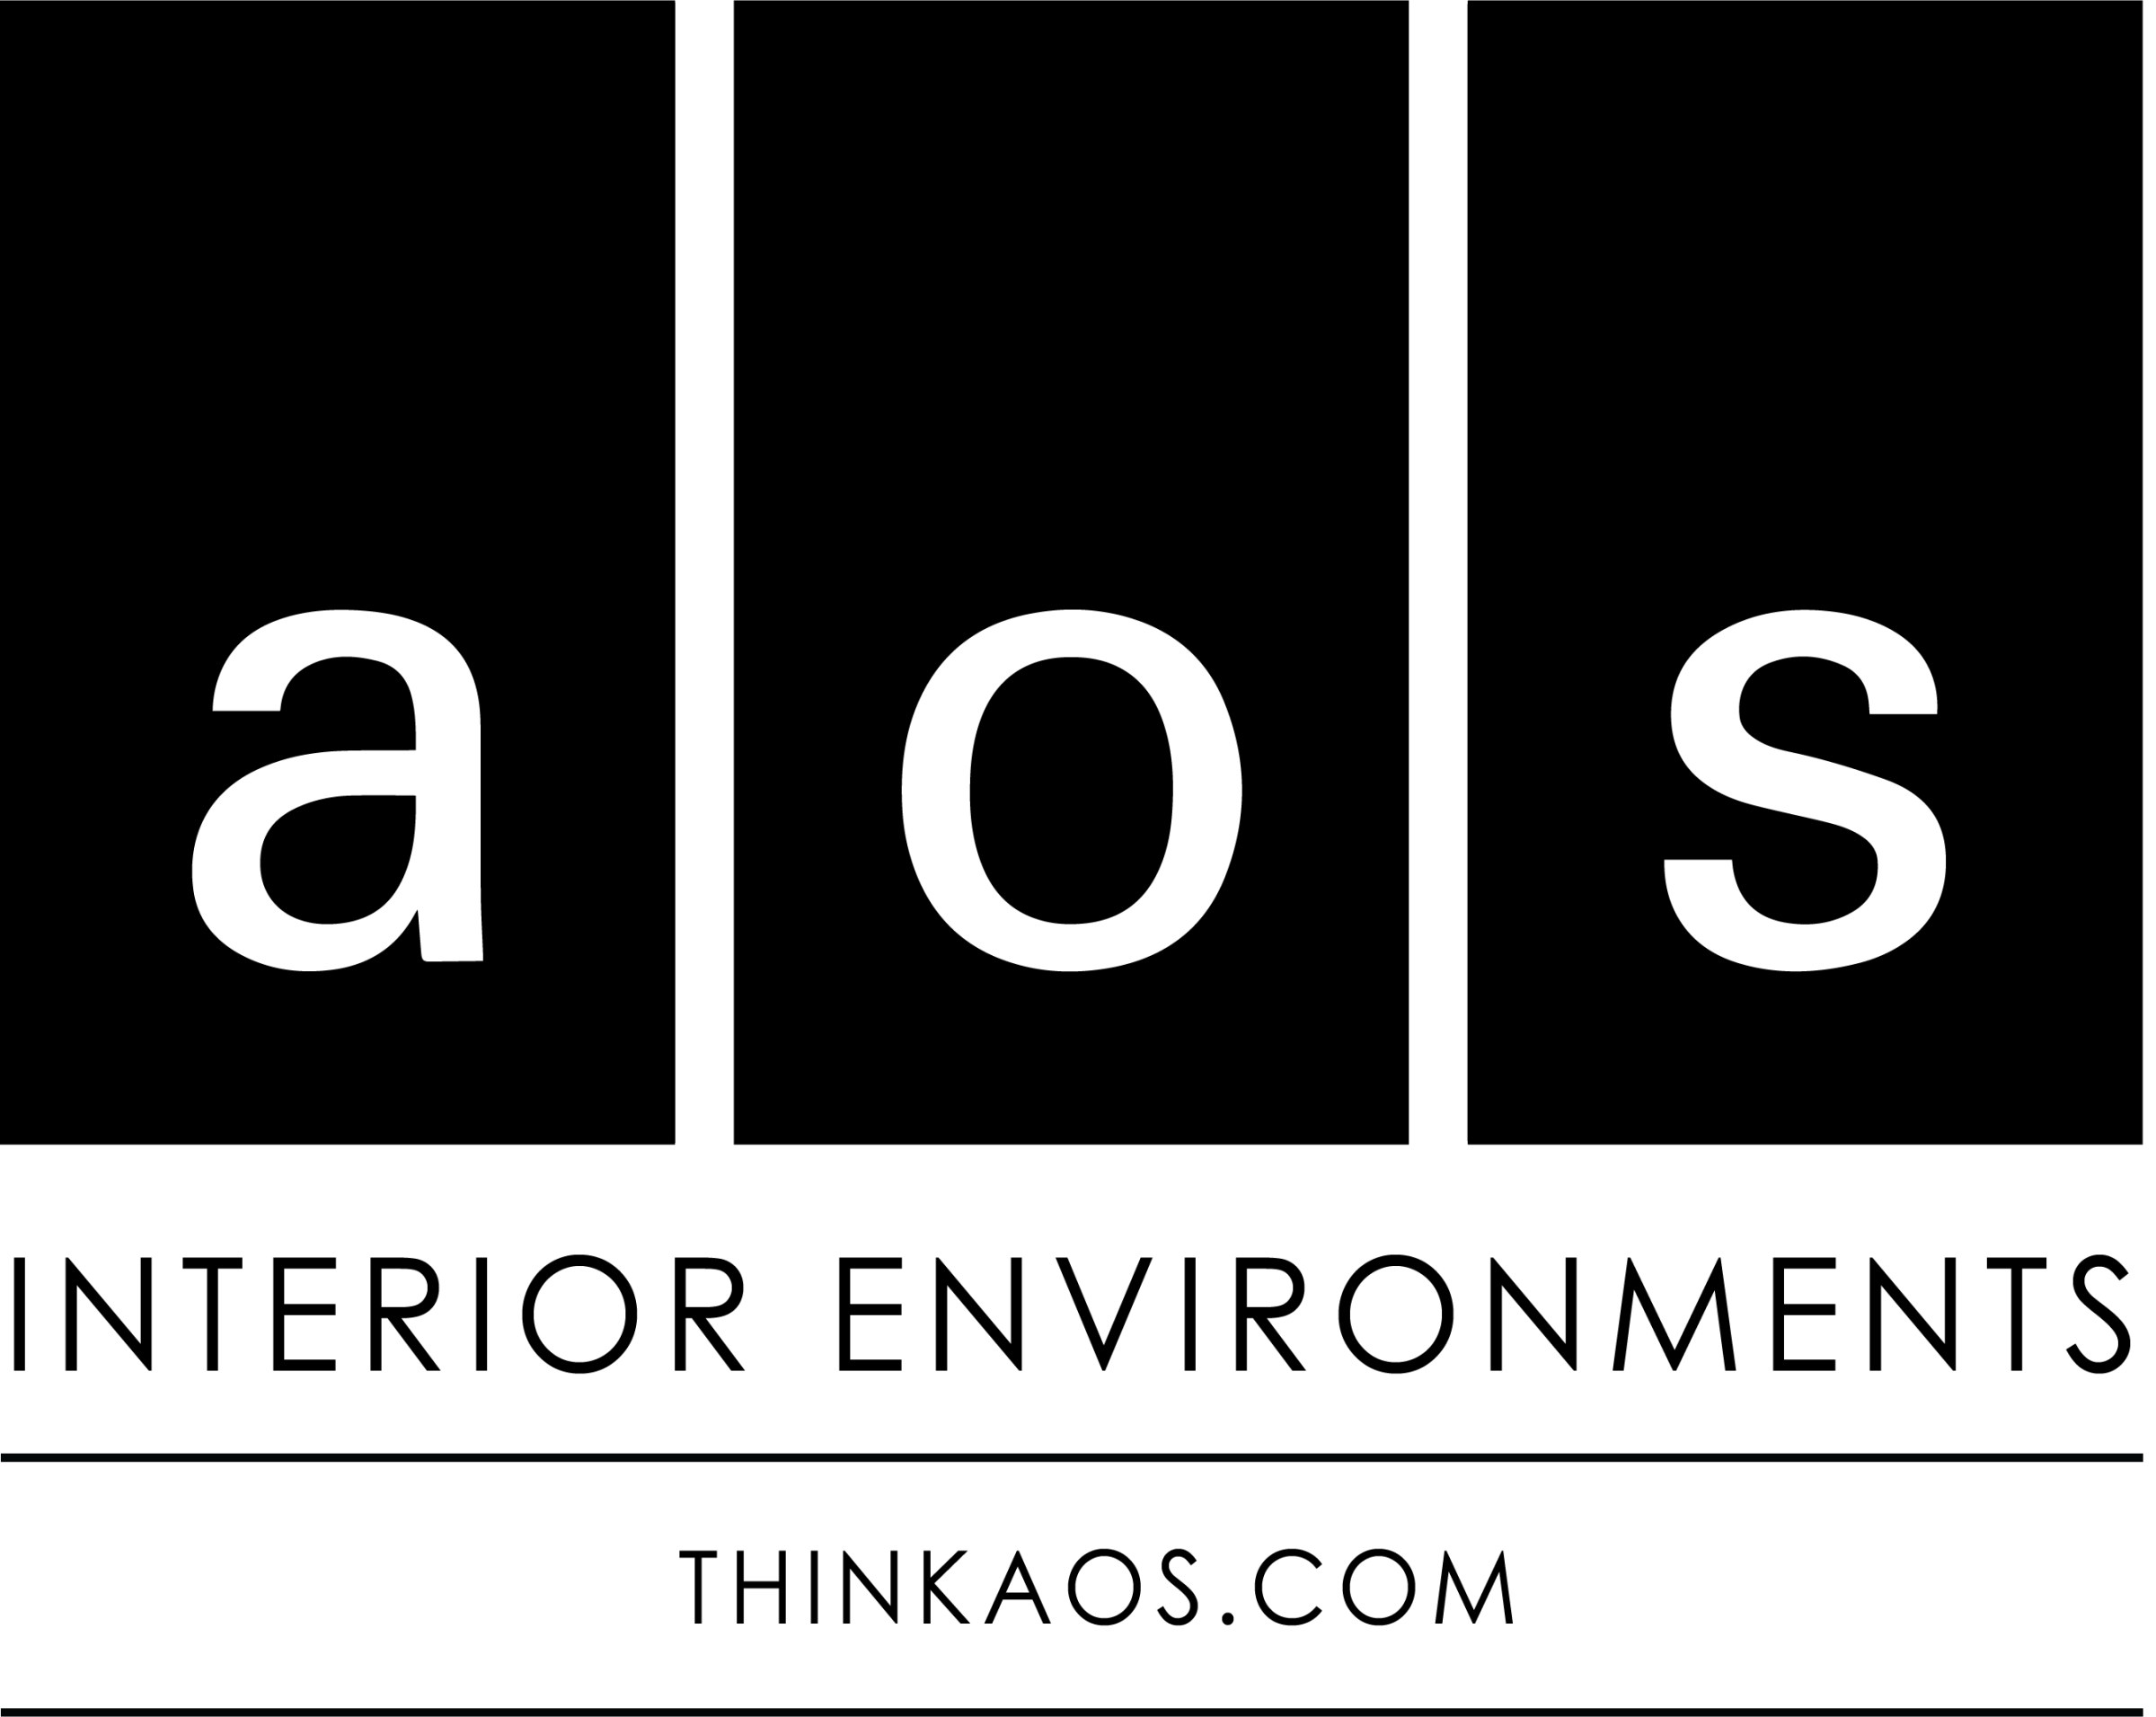 Logo for "aos interior environments"